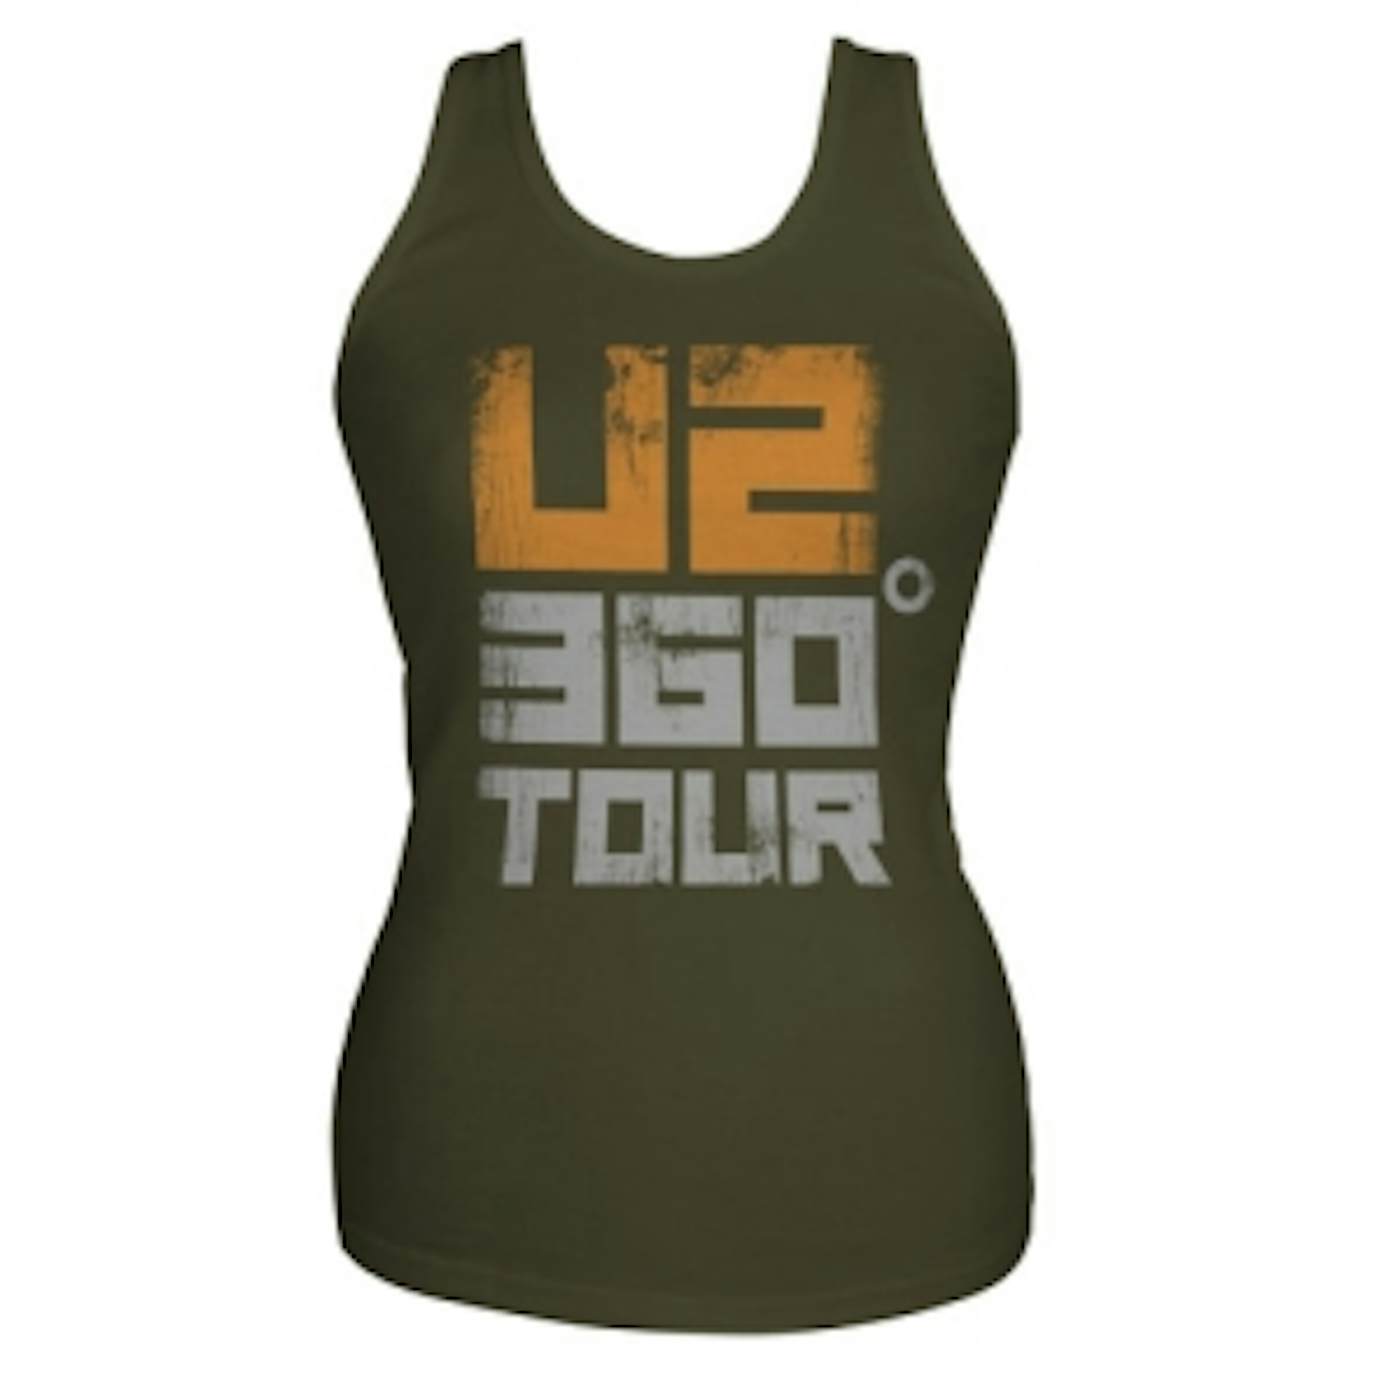 U2 360 Tour Tank Top